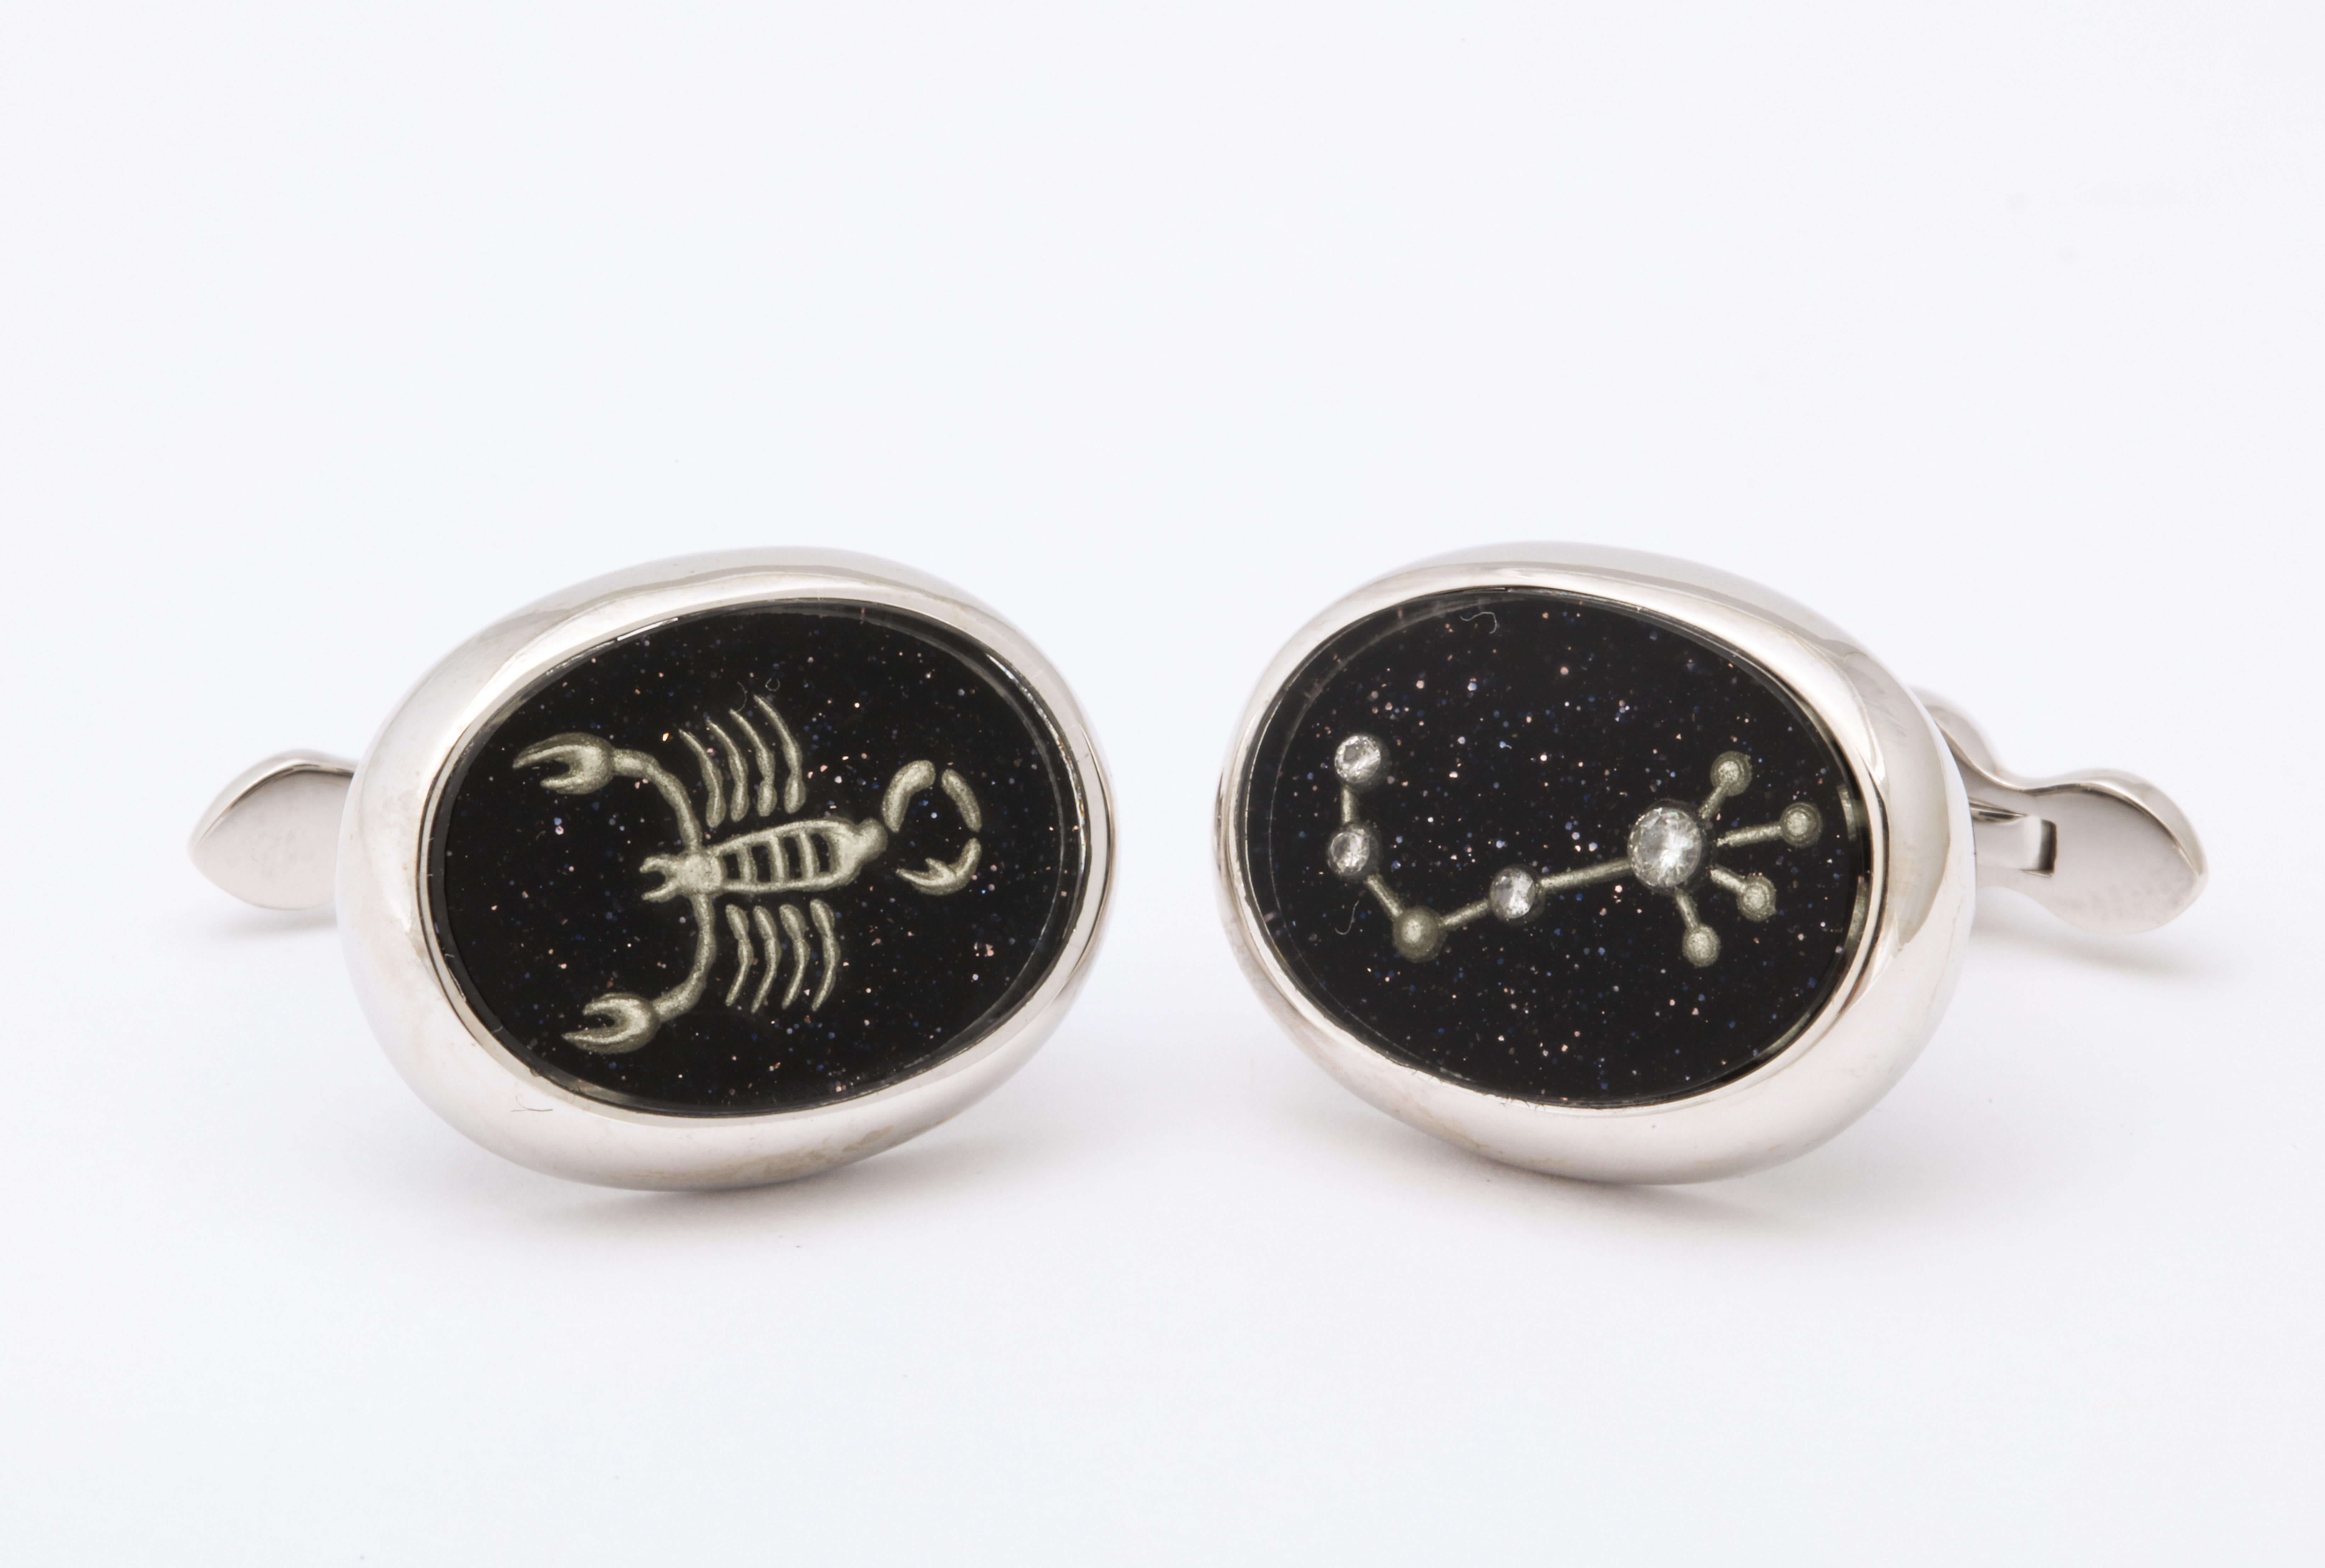 Pour tous les Scorpions (23 octobre-22 novembre) qui méritent une belle paire de boutons de manchette, ceux-ci sont absolument uniques.  Un bouton de manchette est un scorpion en cristal sculpté à l'envers et l'autre représente la constellation du